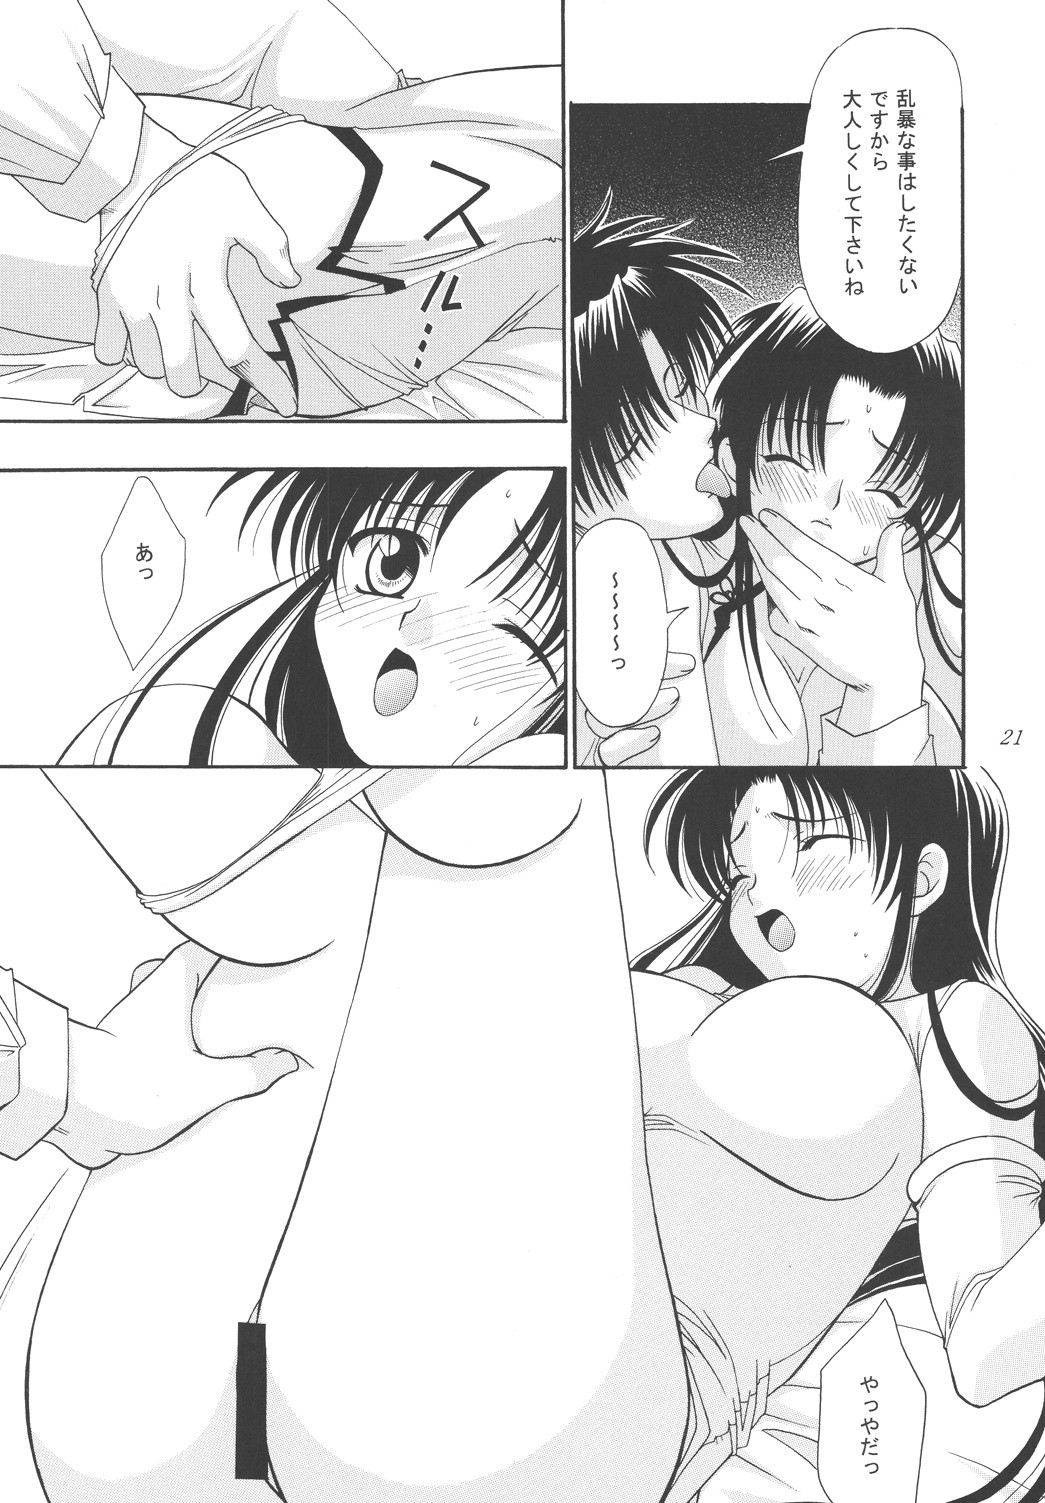 Koi no Tsumi porn comic picture 19